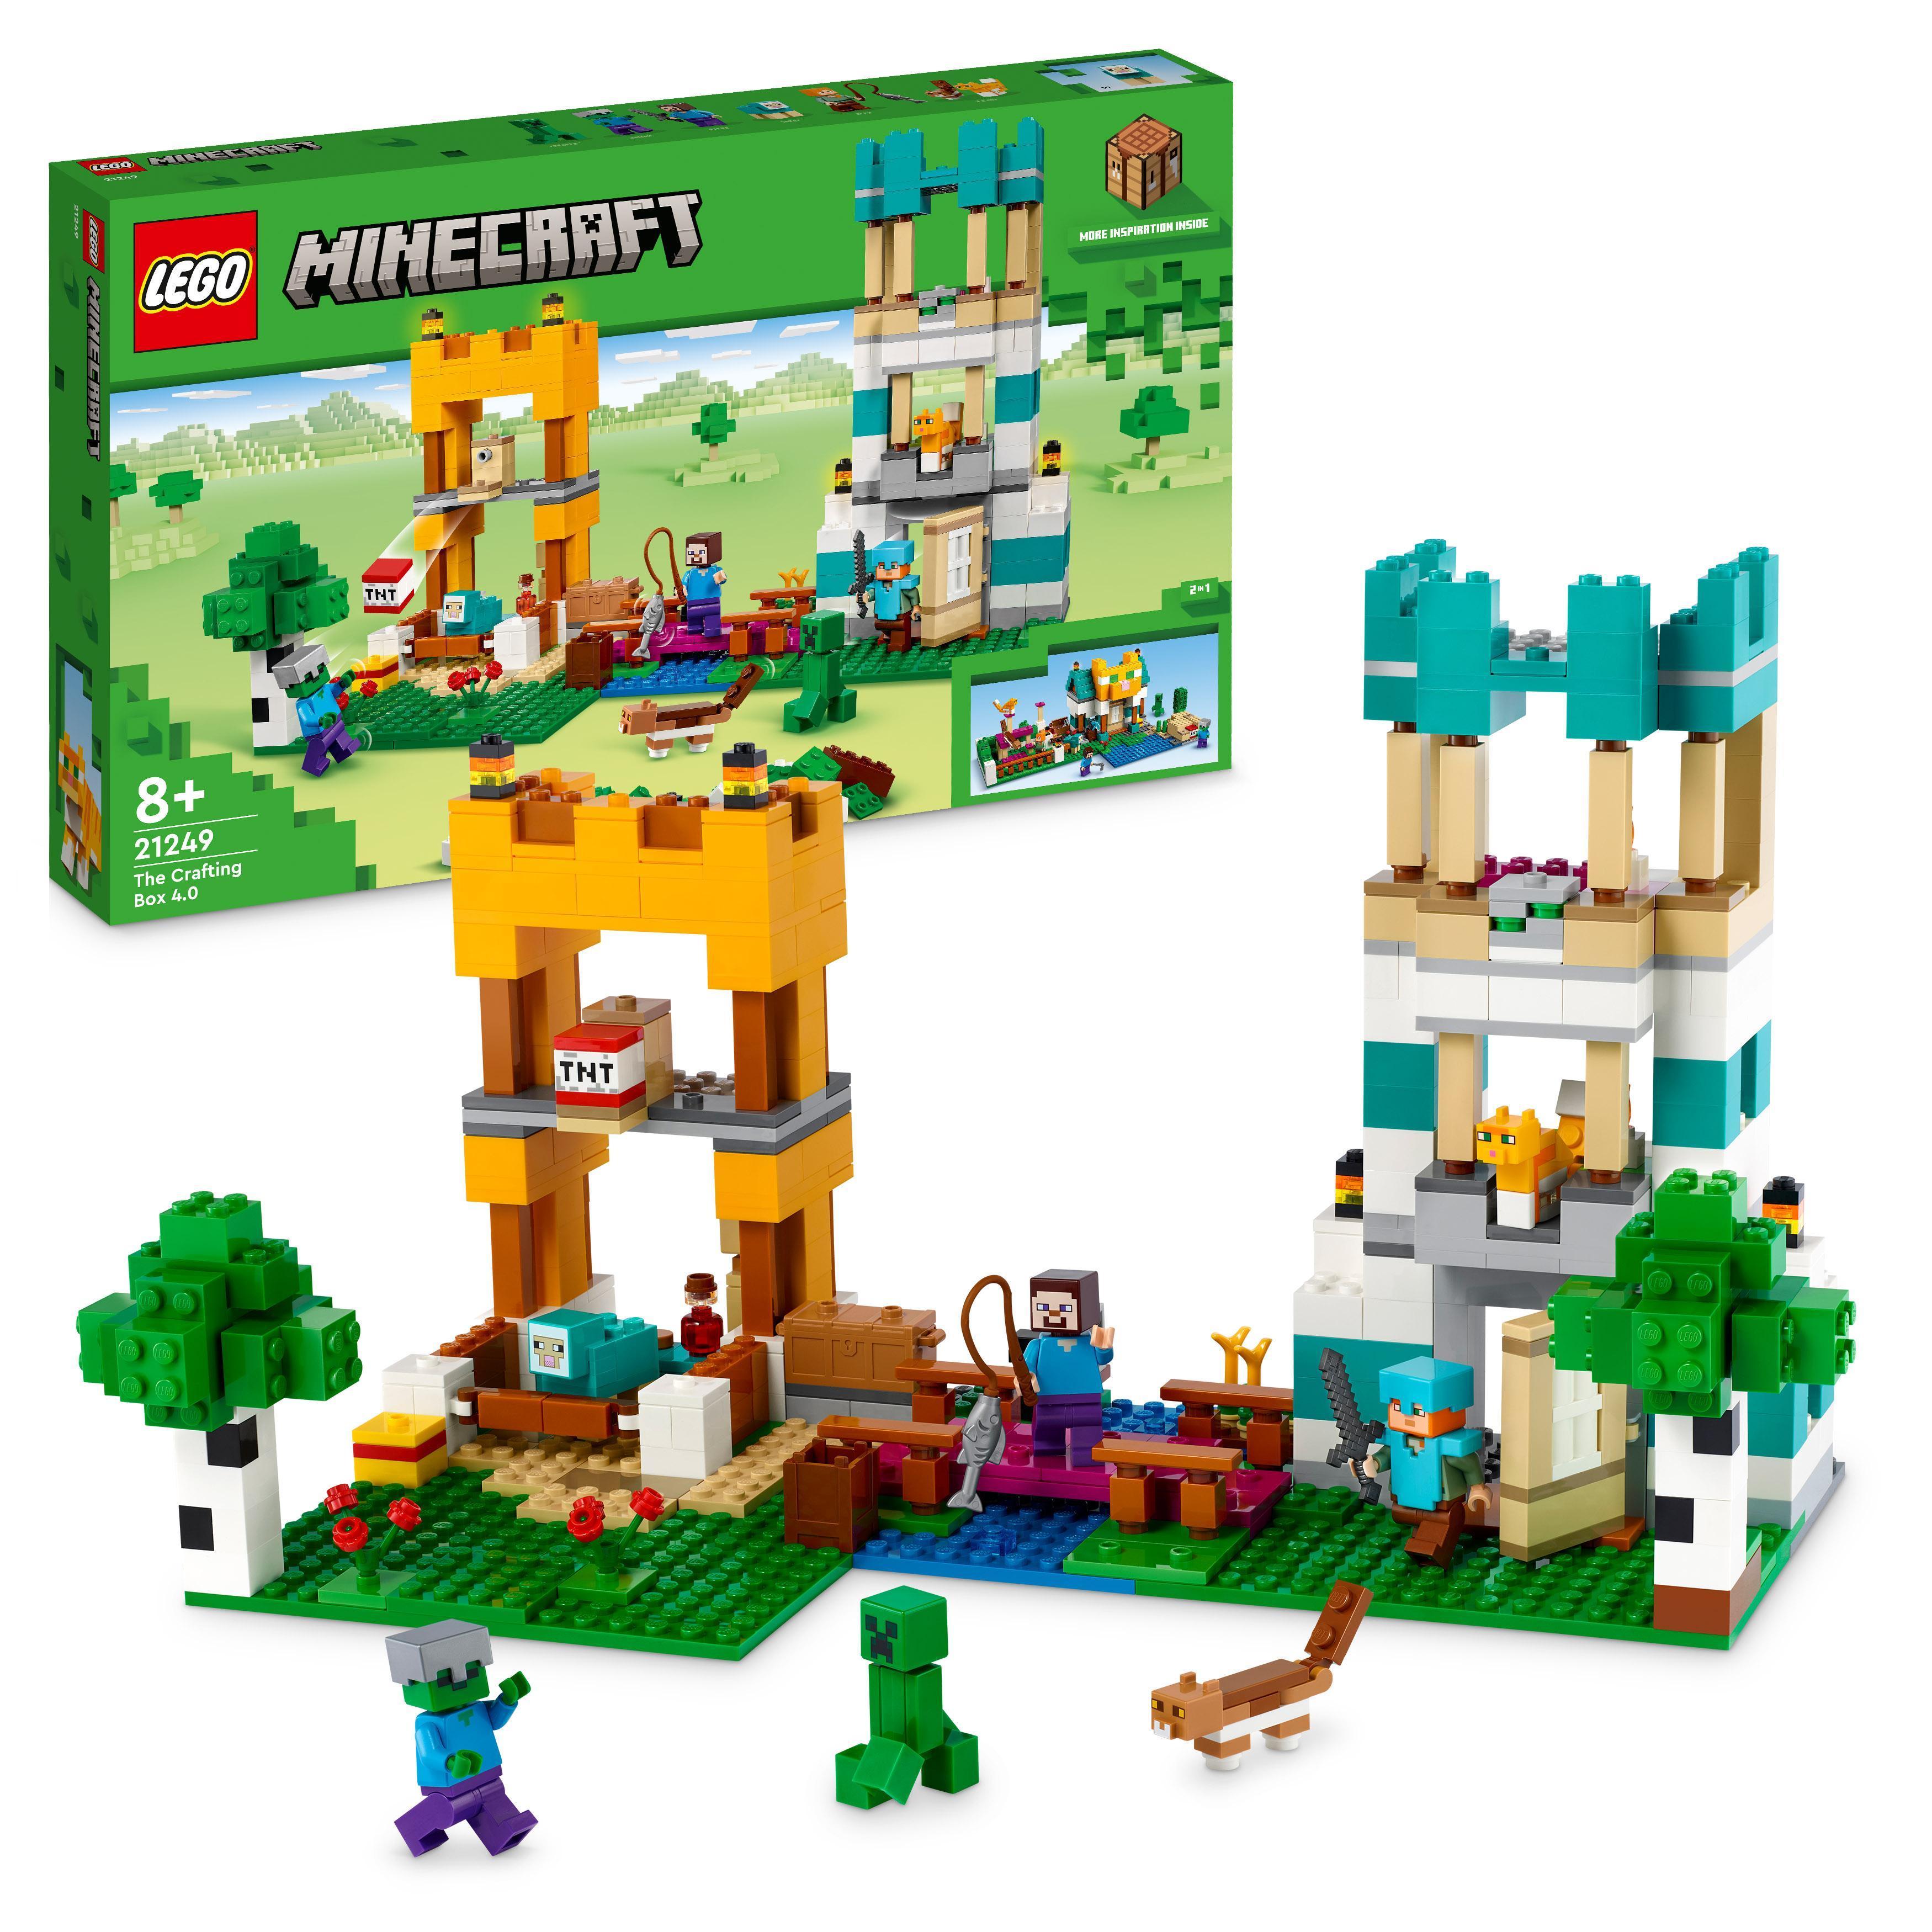 LEGO Minecraft - Konstruksjonsboks 4.0 (21249) - Leker